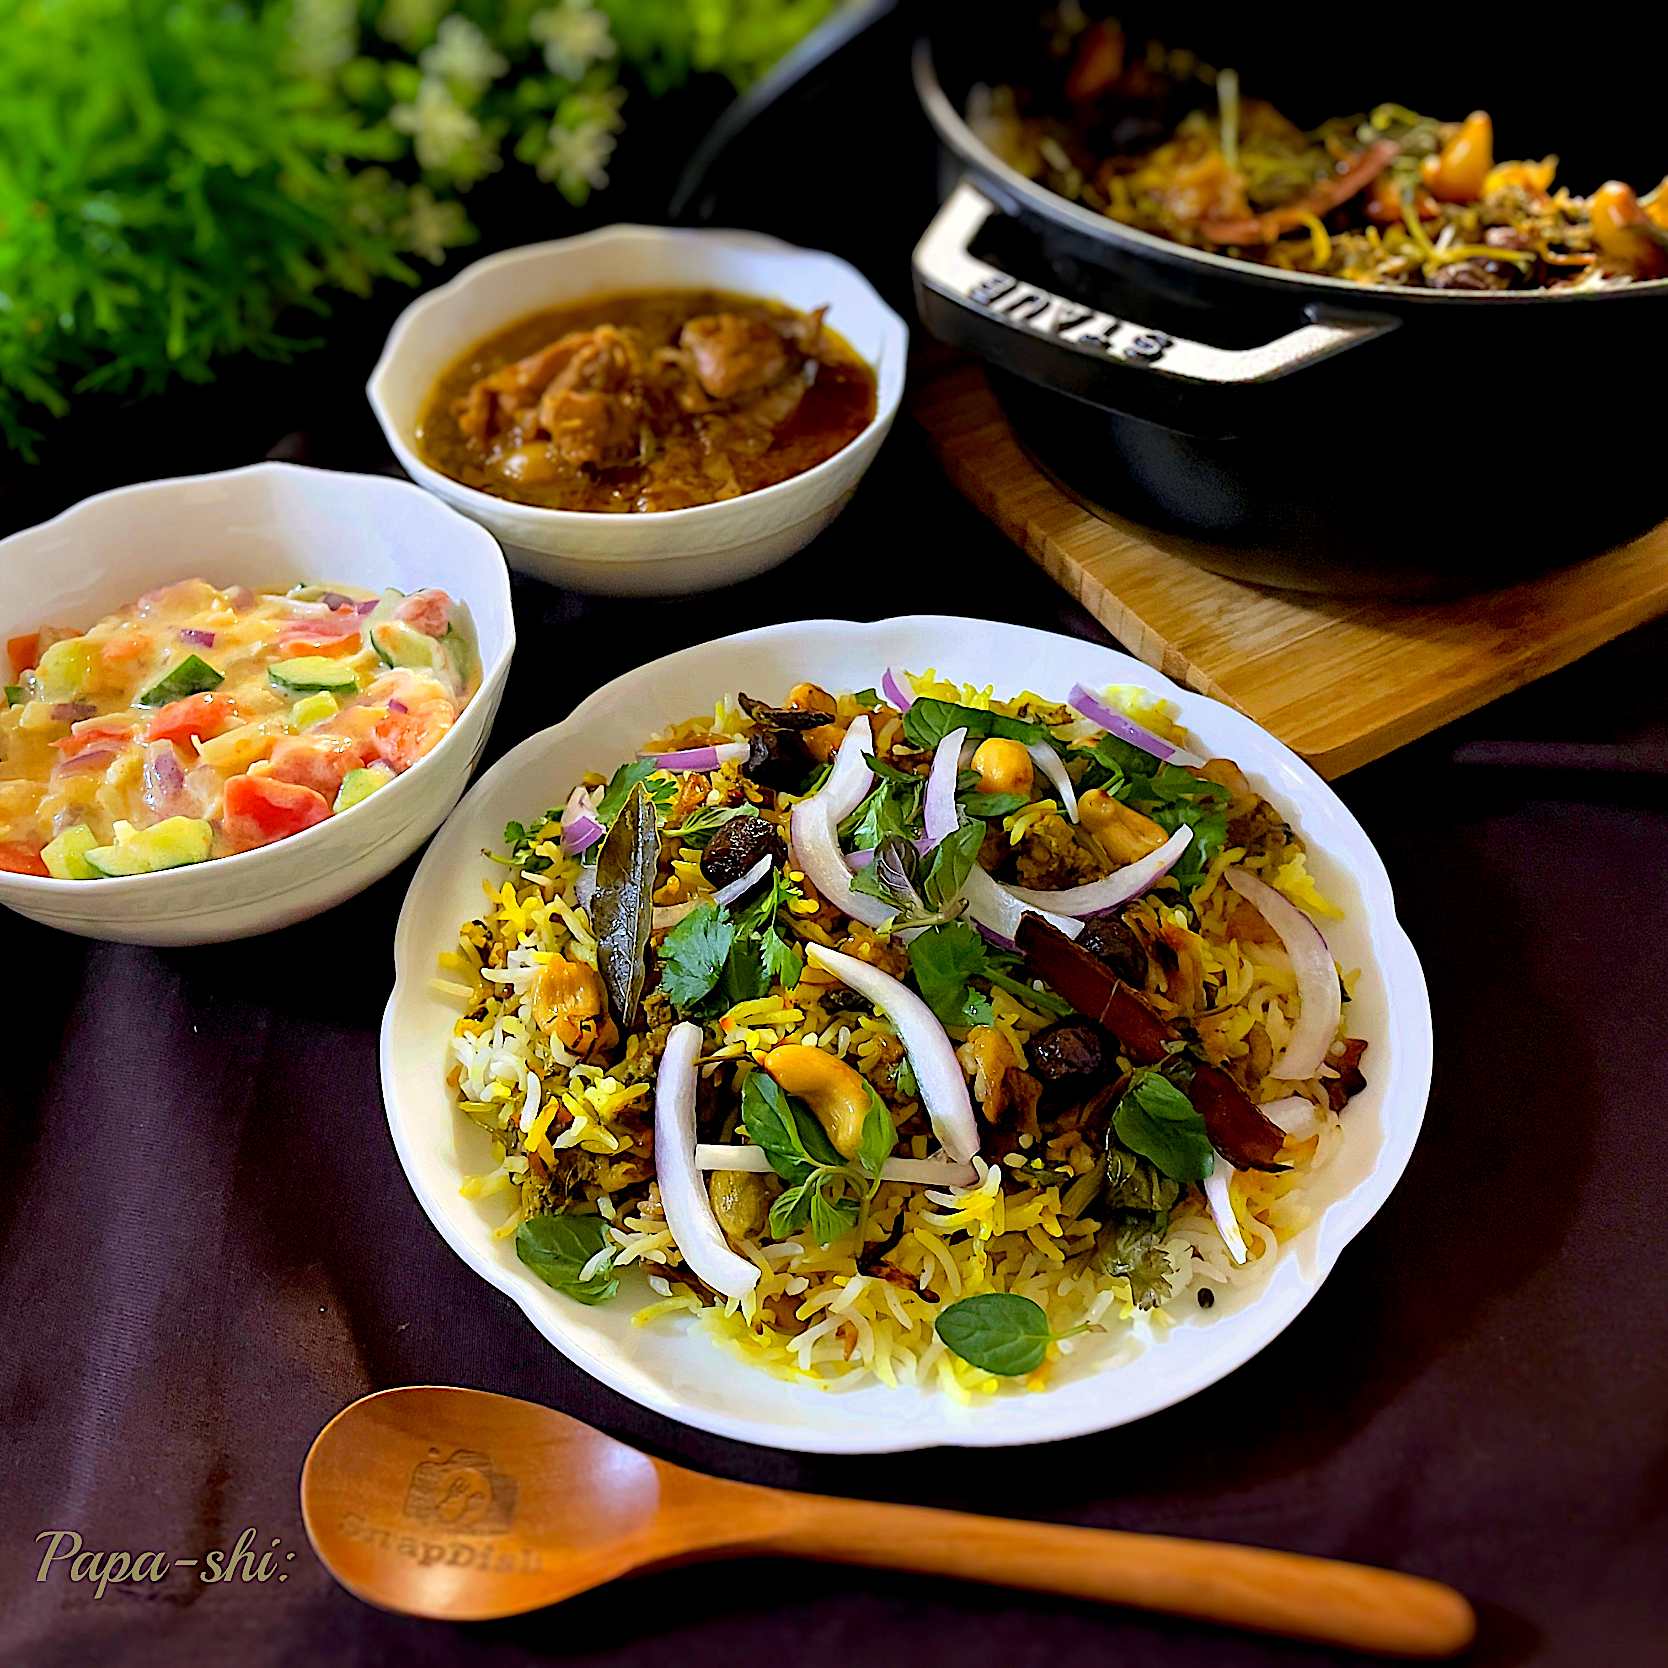 インド料理「ビリヤニ」とは？歴史や食べ方、おすすめレシピを紹介